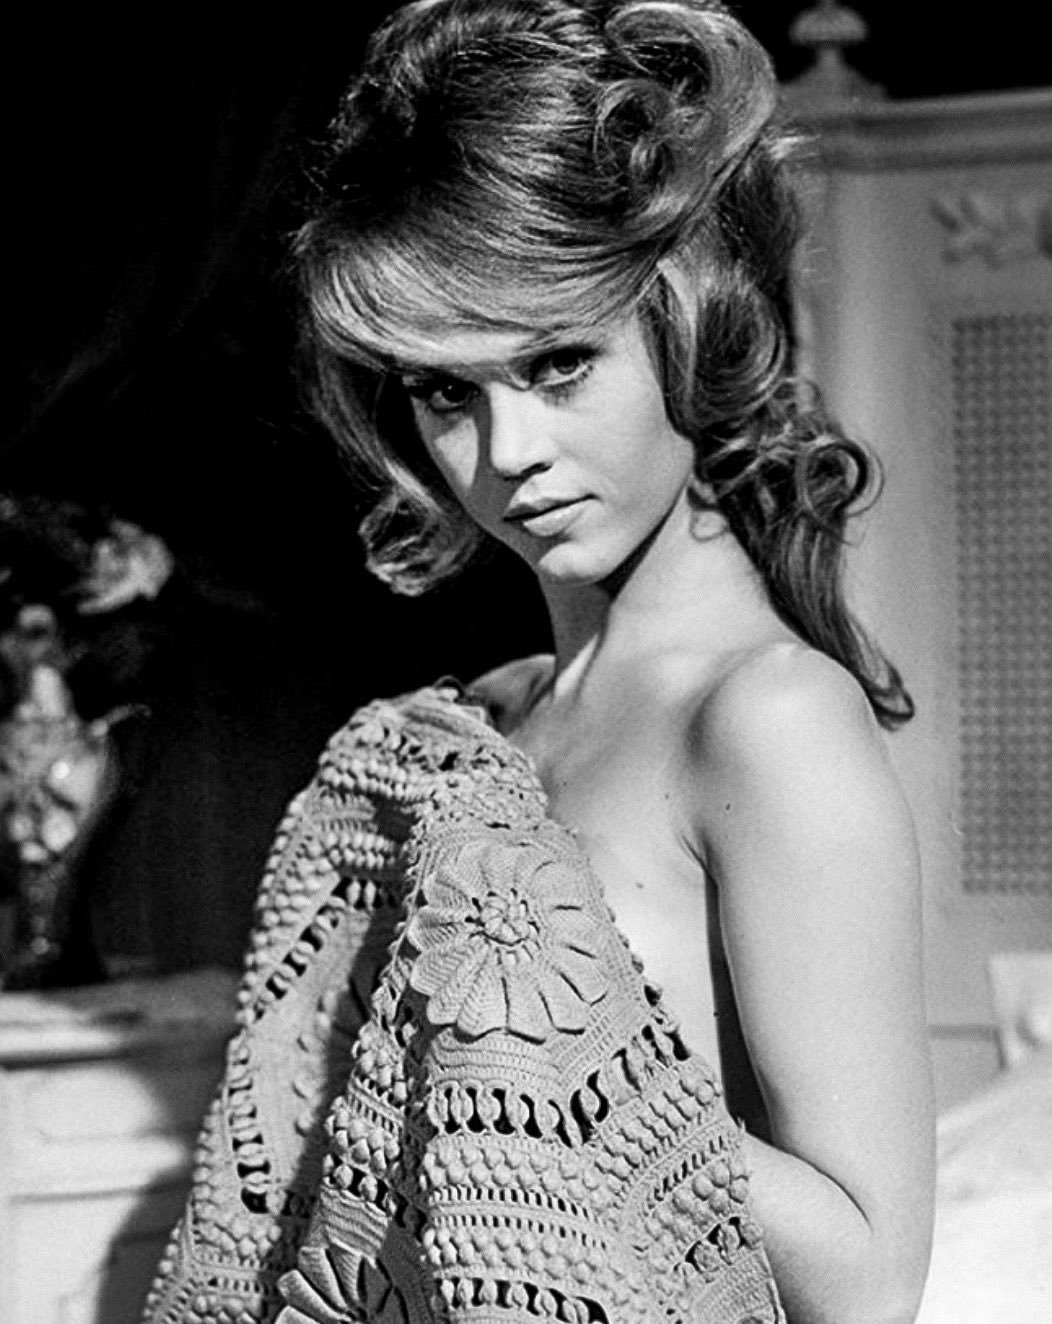 Jane Fonda in a publicity portrait for La Ronde, 1964.